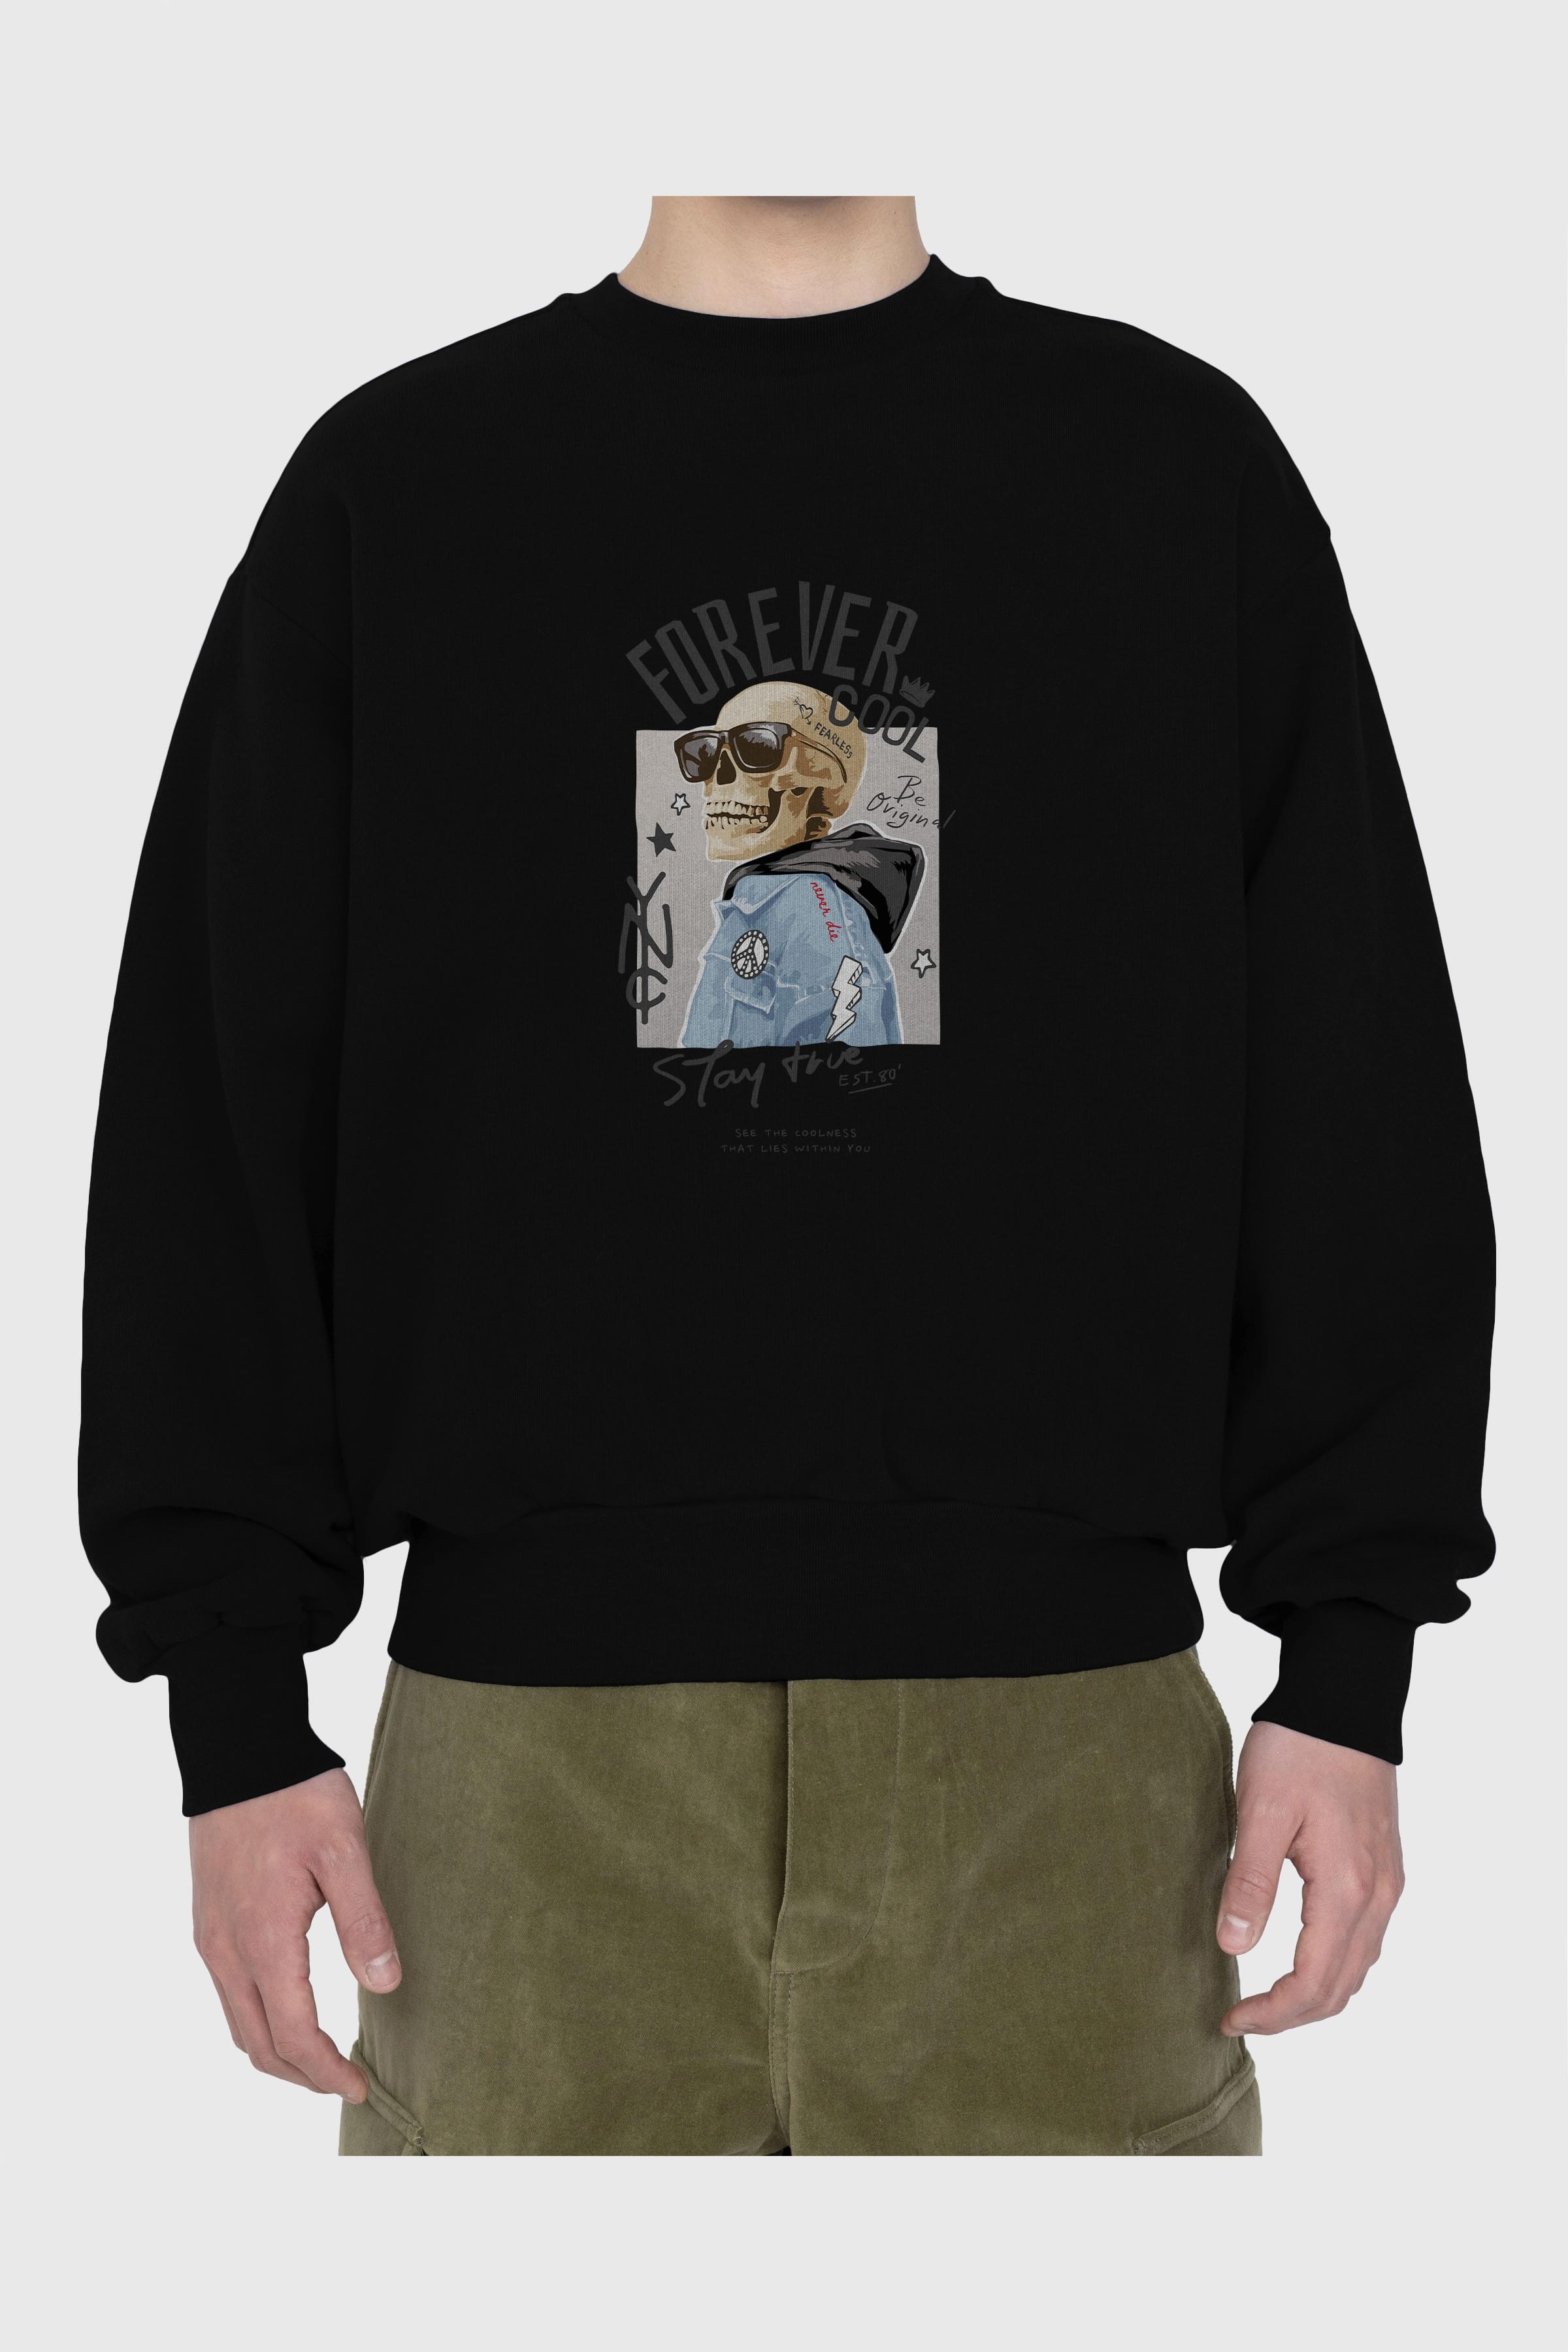 Teddy Bear Forever Cool Ön Baskılı Oversize Sweatshirt Erkek Kadın Unisex